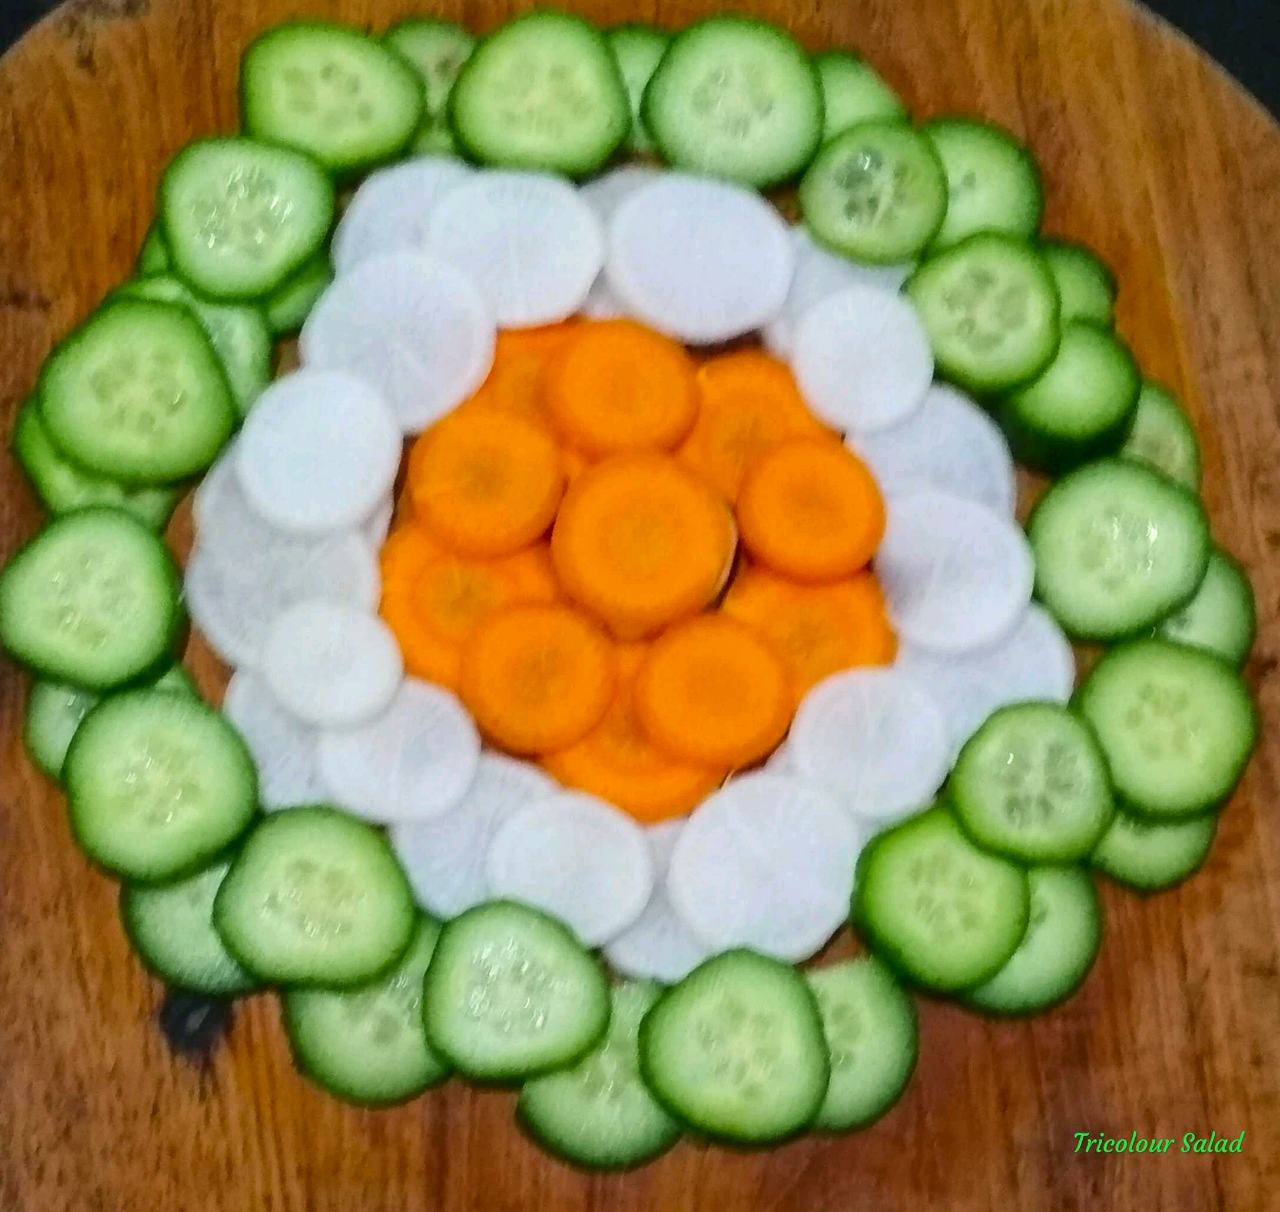 Tricolour Salad